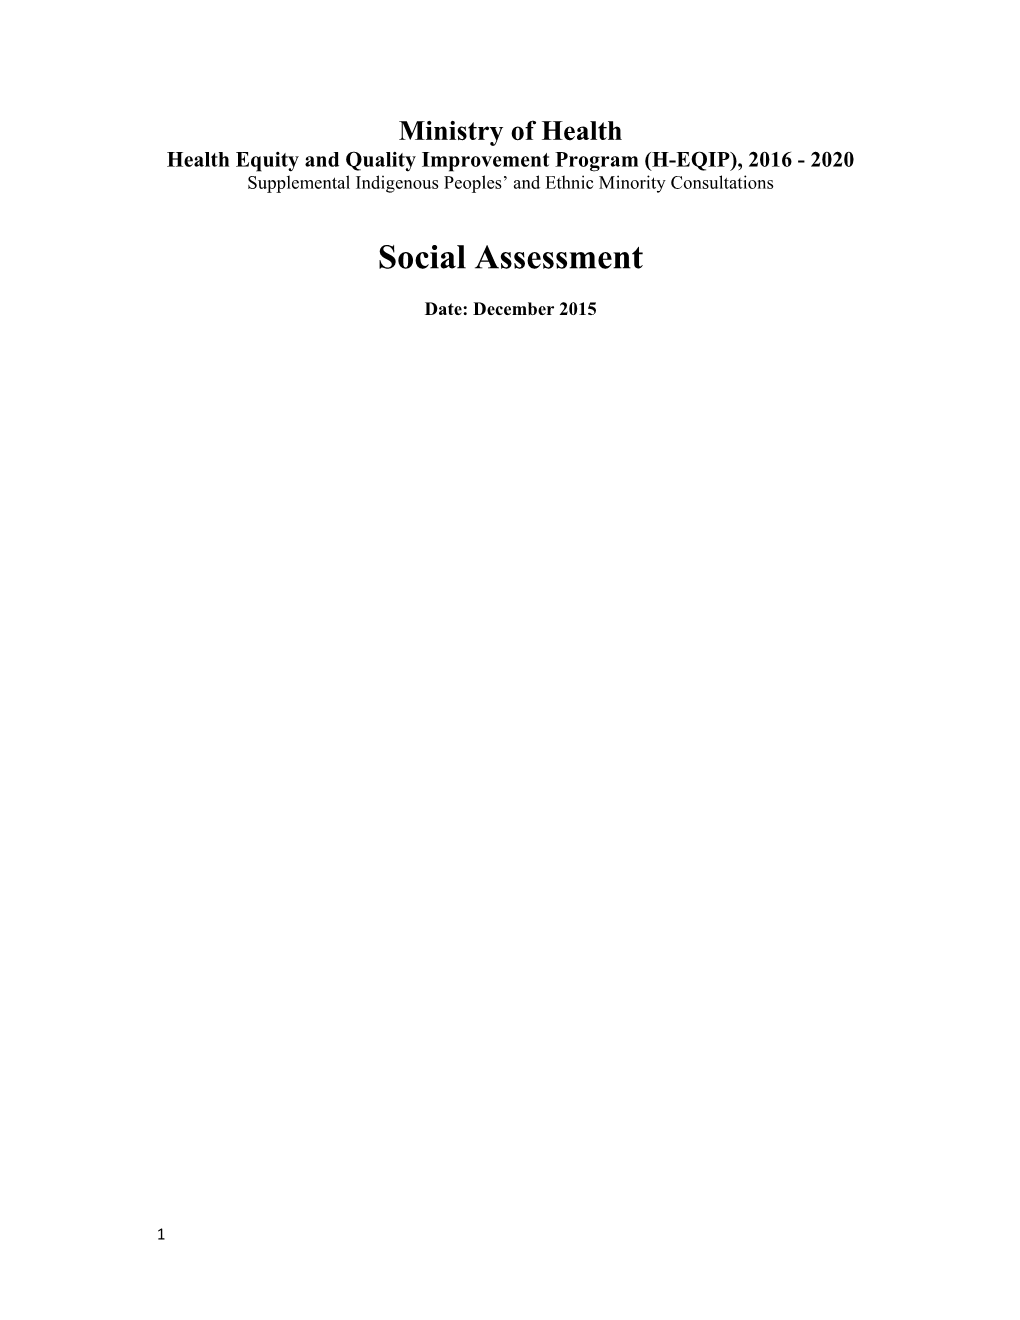 Social Assessment